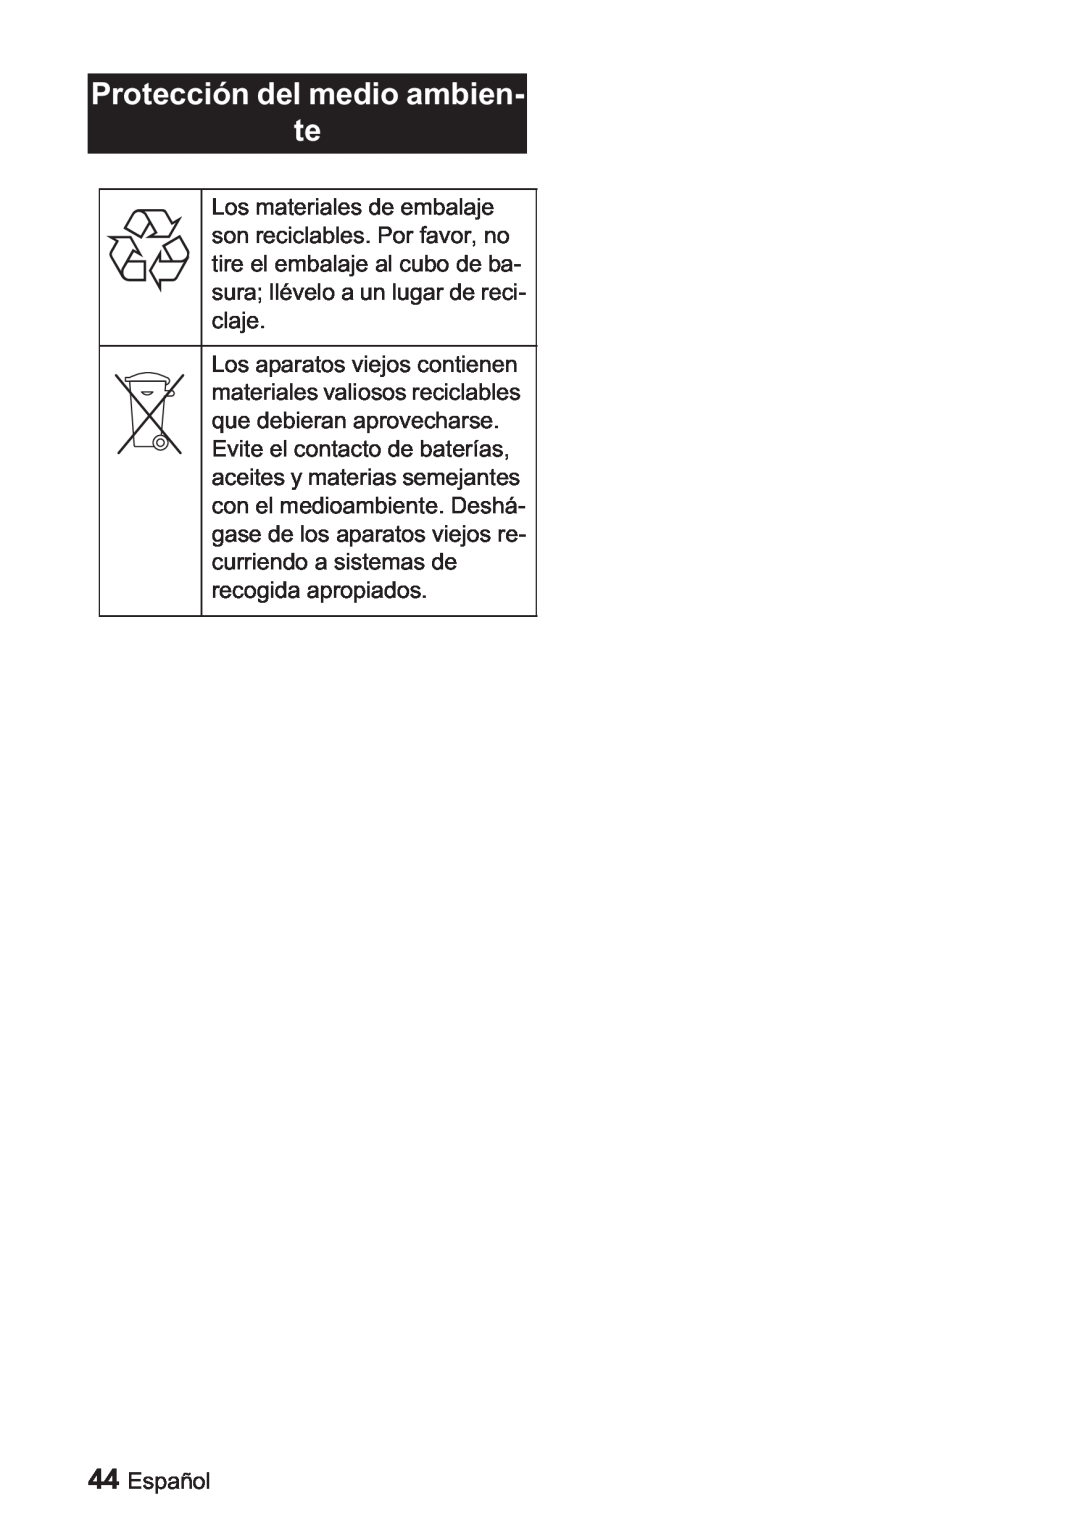 Karcher BDP 1500, BDP 50 manual Protección del medio ambien te, Español 